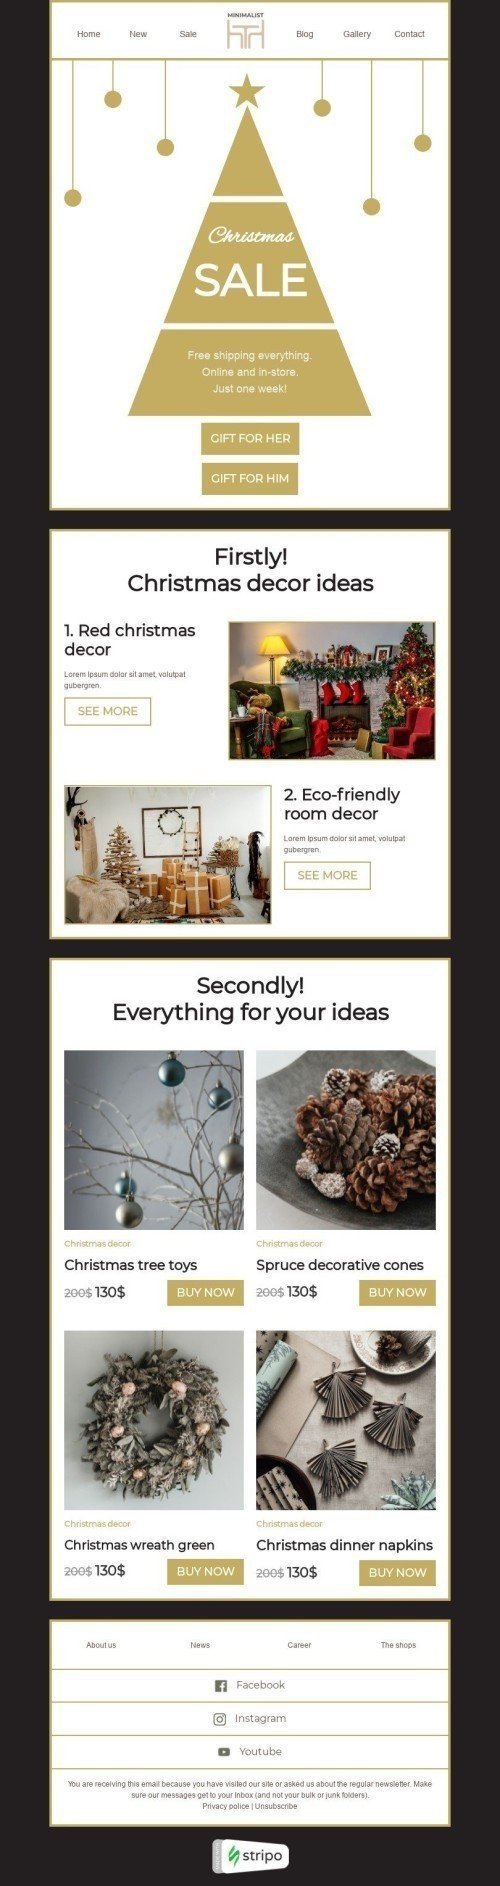 Modelo de E-mail de «Ideias de decoração de natal» de Natal para a indústria de Móveis, Decoração e DIY Visualização de dispositivo móvel